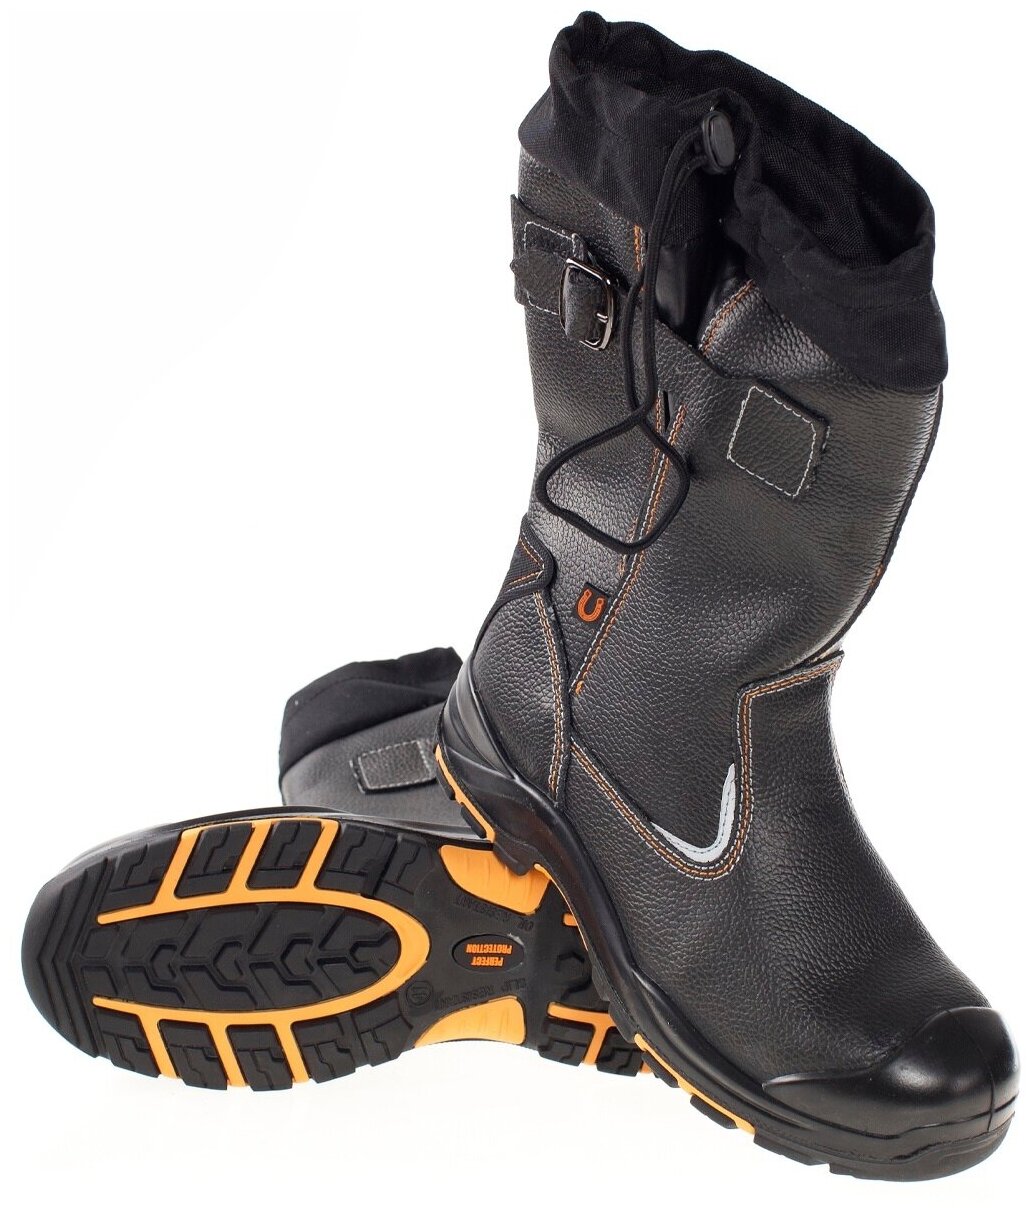 Сапоги PERFECT protection-кевлар подошва ПУ-нитрил. Тип обуви: Сапоги. Размер:43